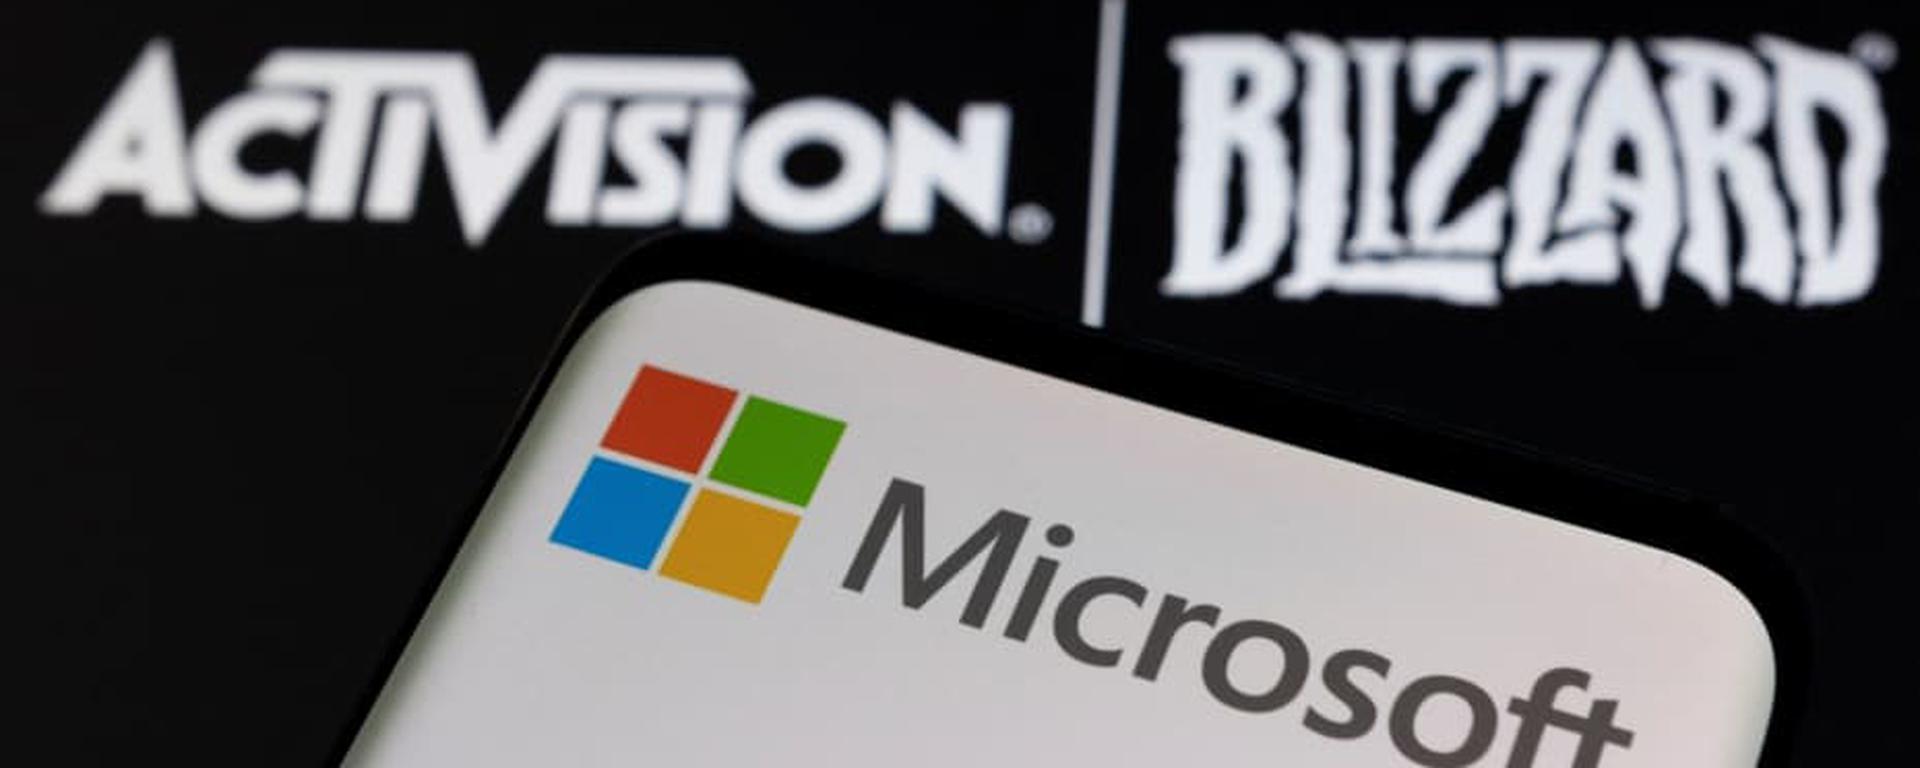 Microsoft compra Activision Blizzard: ¿Qué generaría esta adquisición en la industria y cómo afectaría a los usuarios?